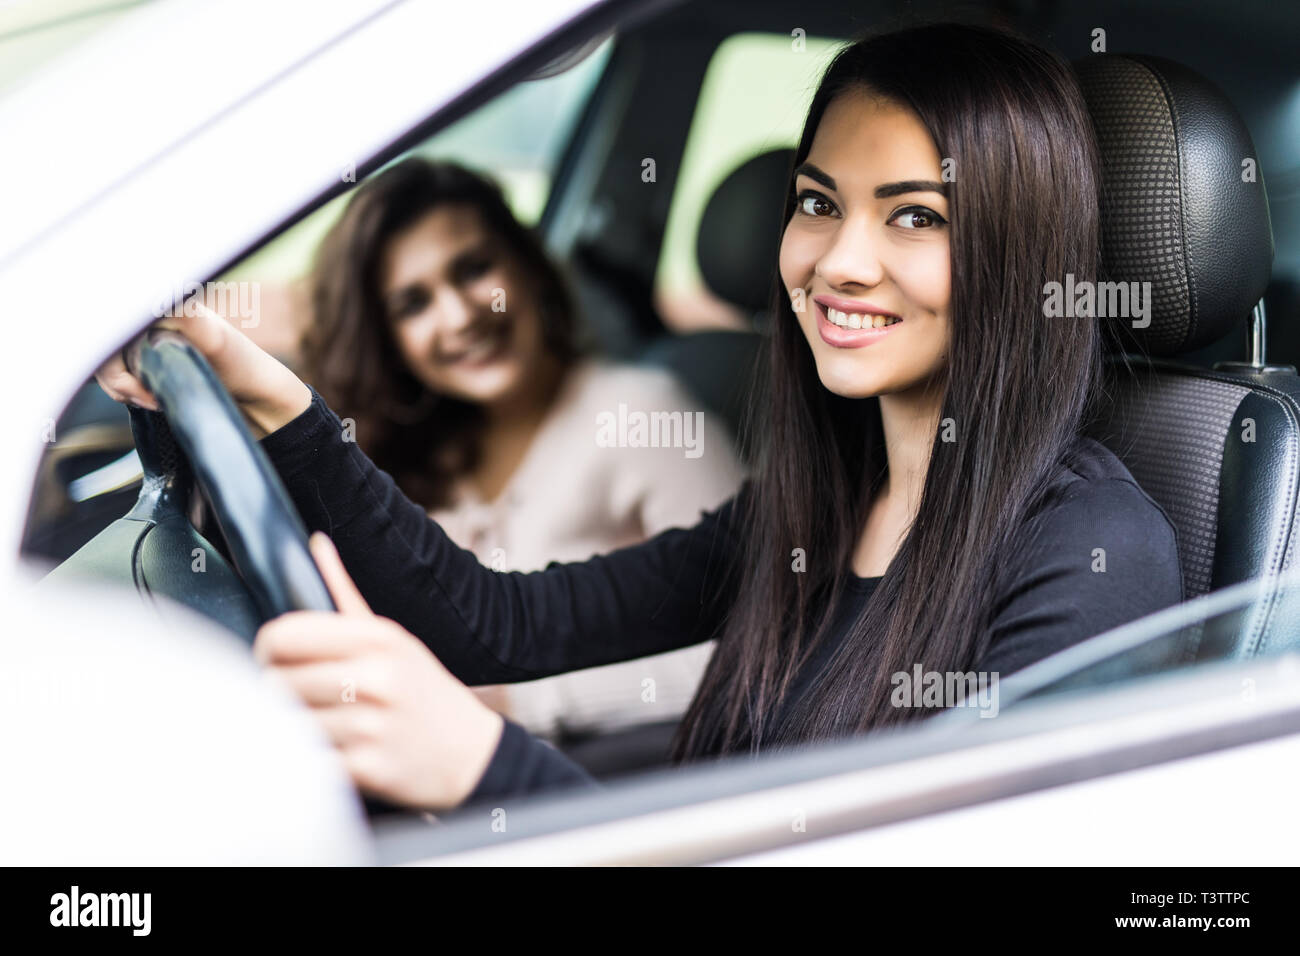 Zwei freundliche junge Frauen genießen Sie einen Tagesausflug in die Stadt gesehen durch das offene Fenster des Autos glücklich in die Kamera grinsend Stockfoto